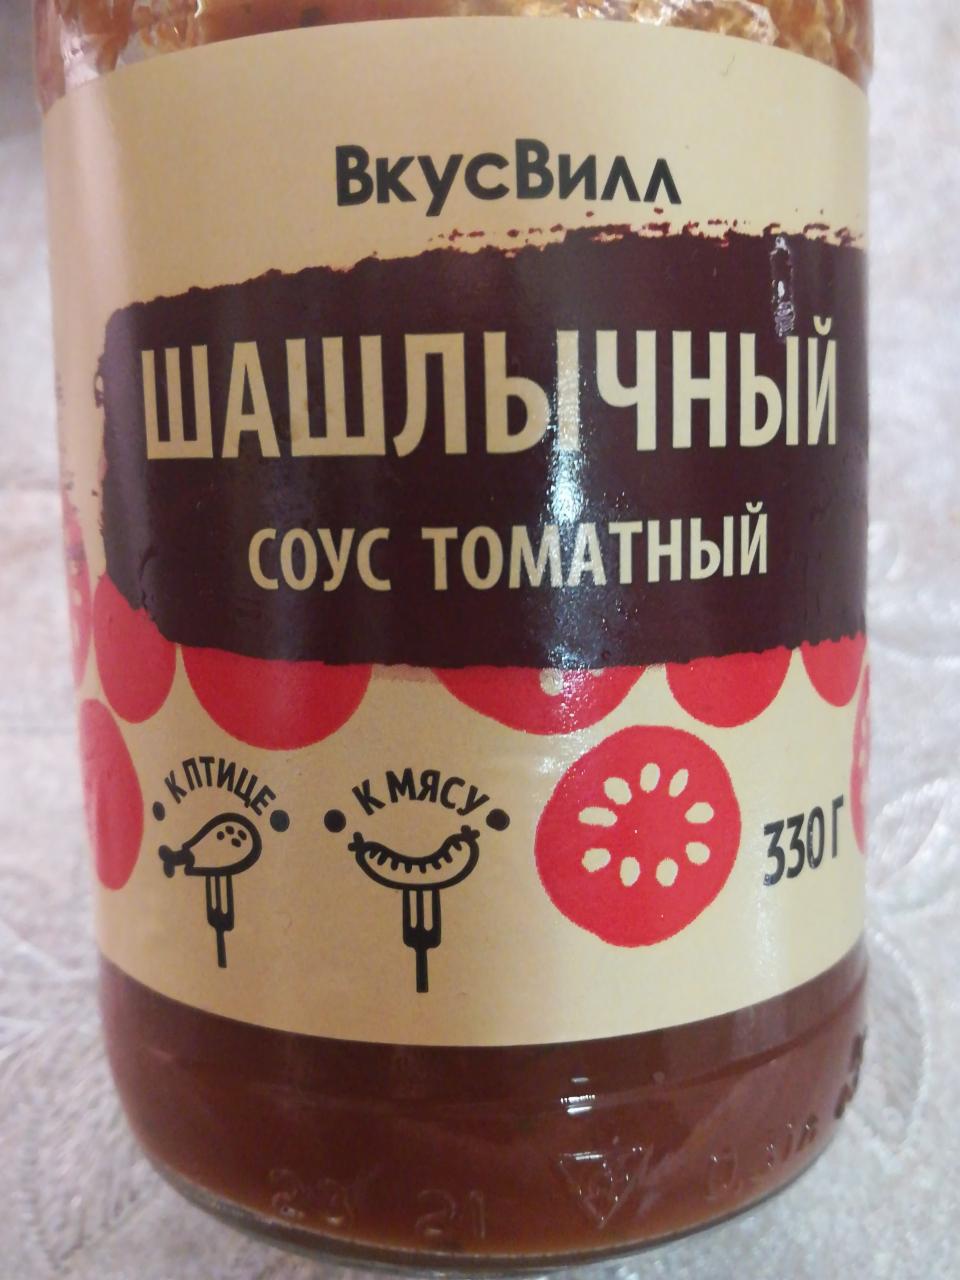 Фото - шашлычный соус томатный ВкусВилл